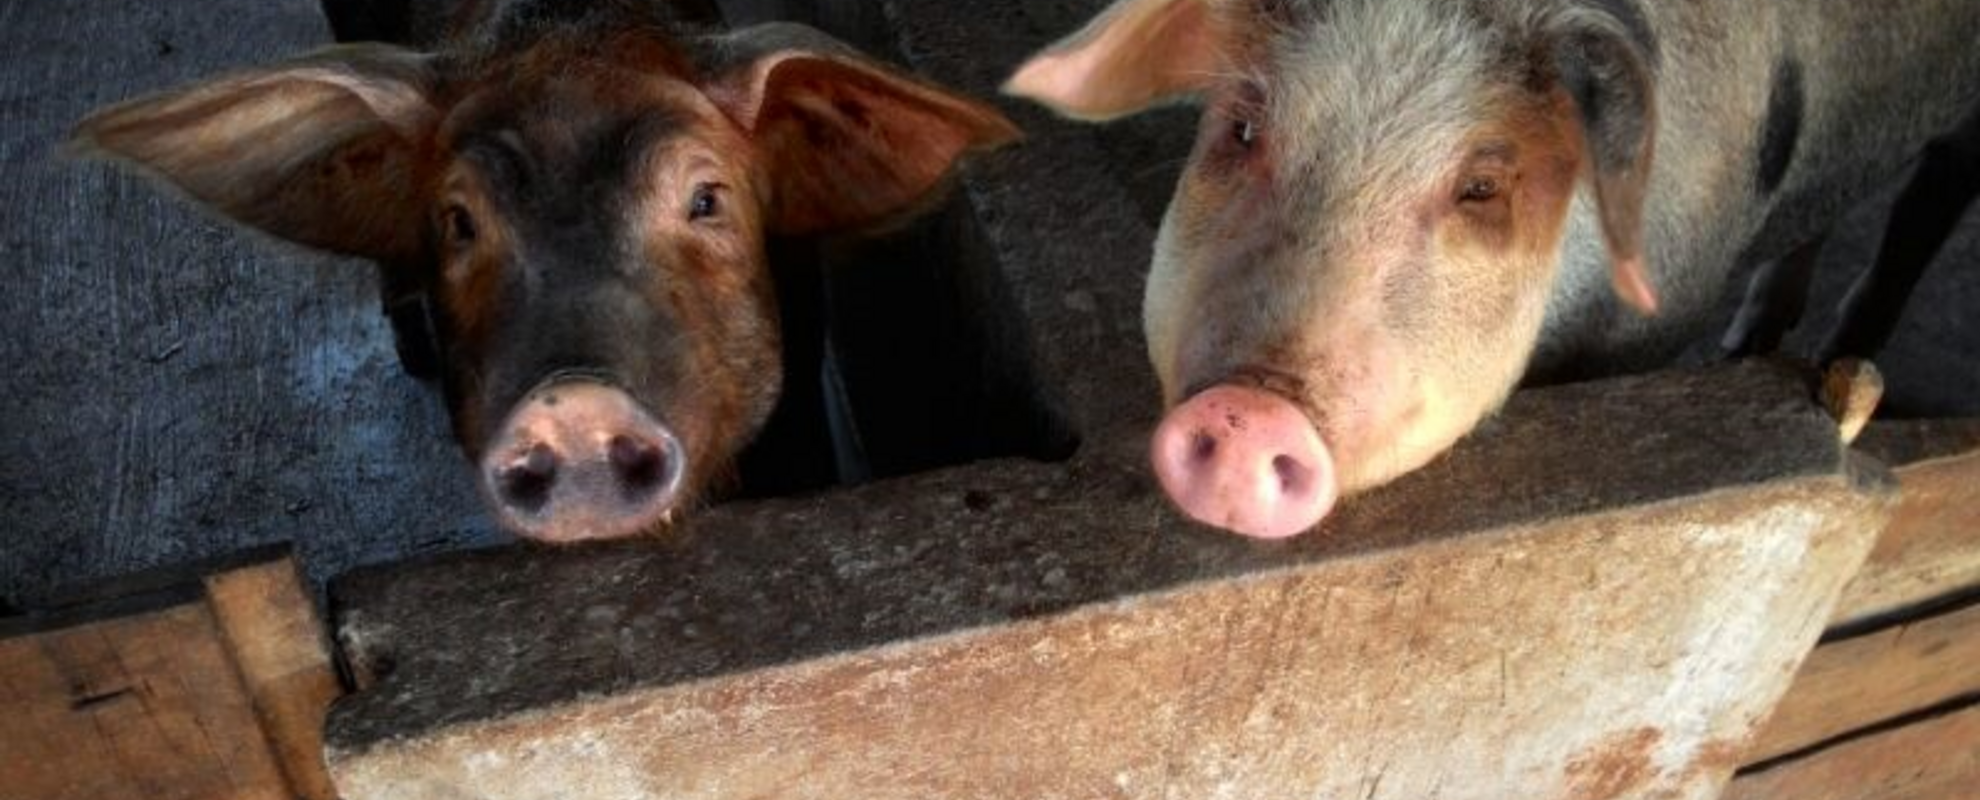 Pigs in Vietnam